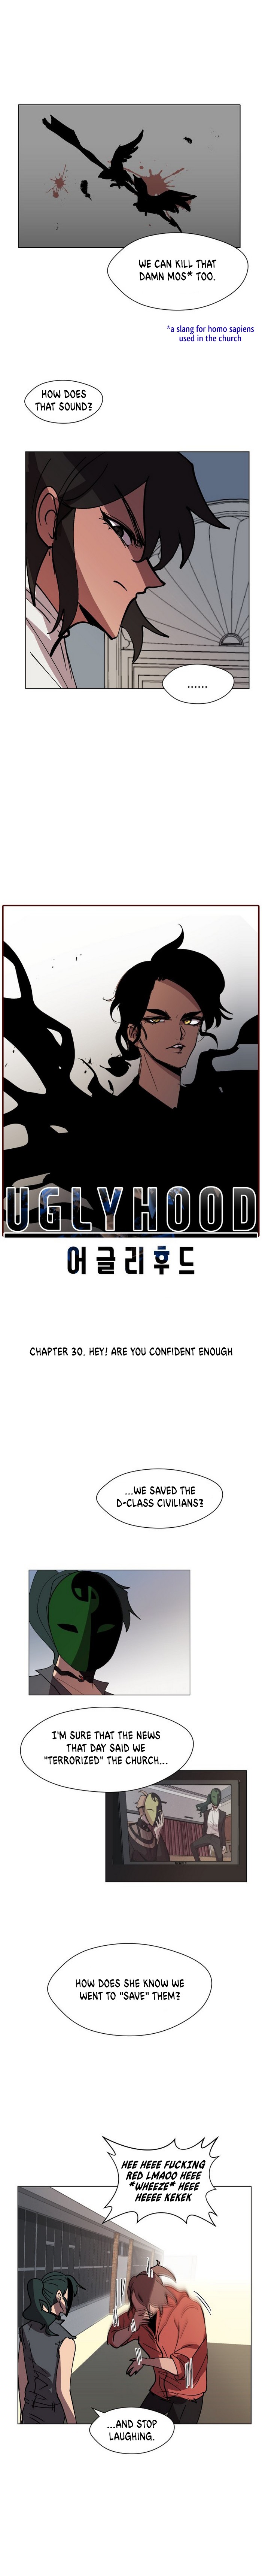 Uglyhood - Page 2